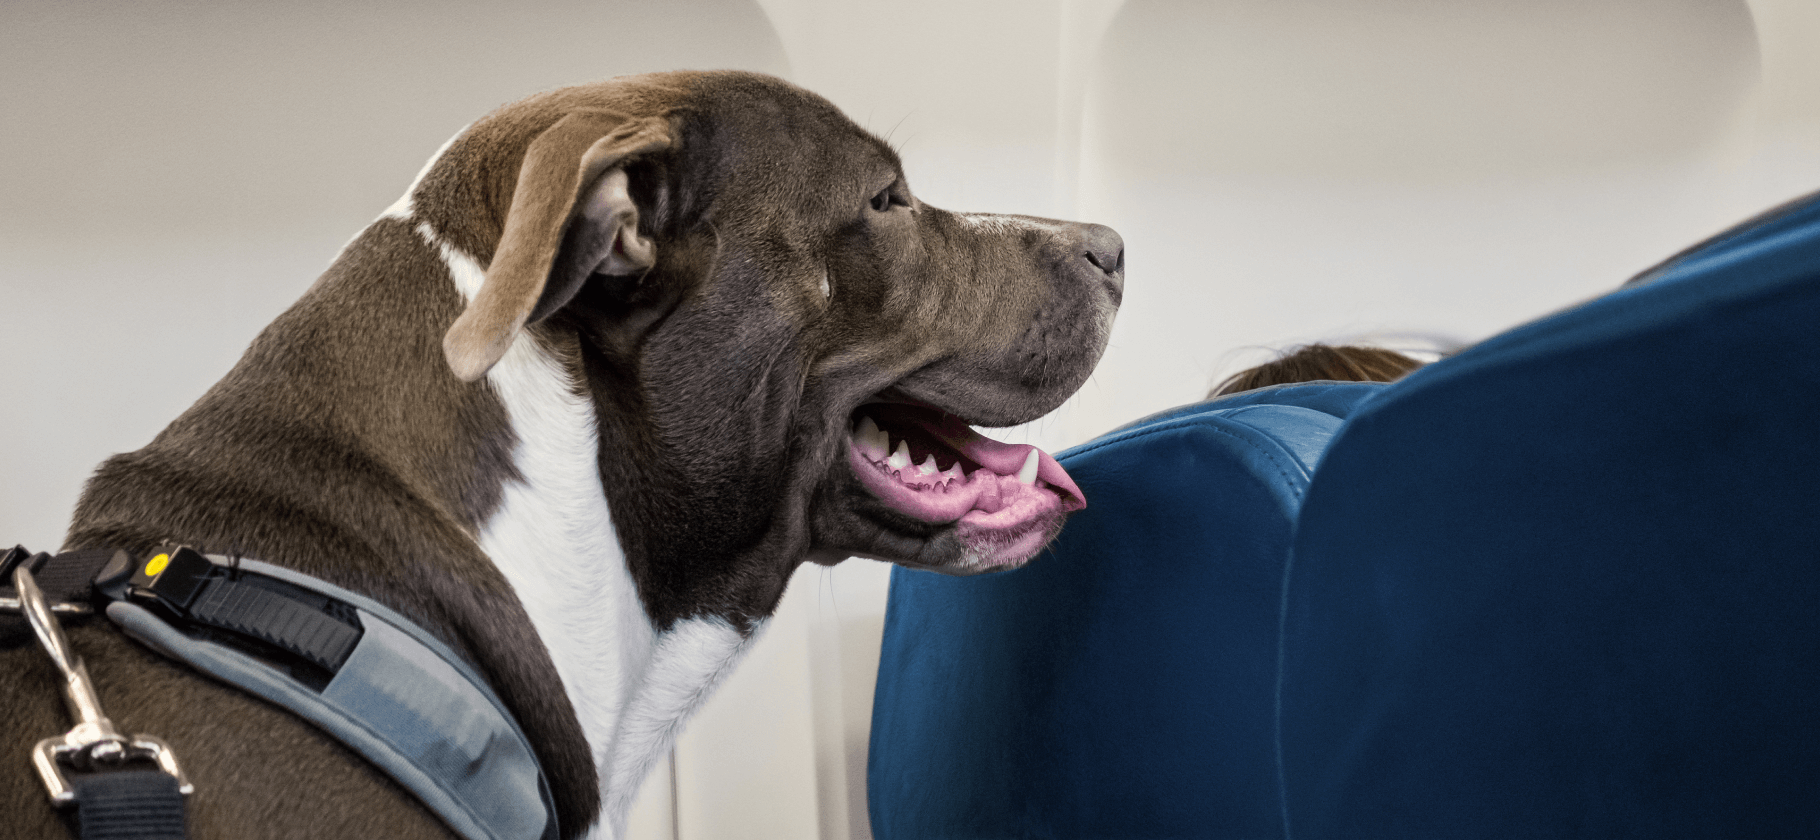 Как перевозить животных в самолете: правила 10 авиакомпаний